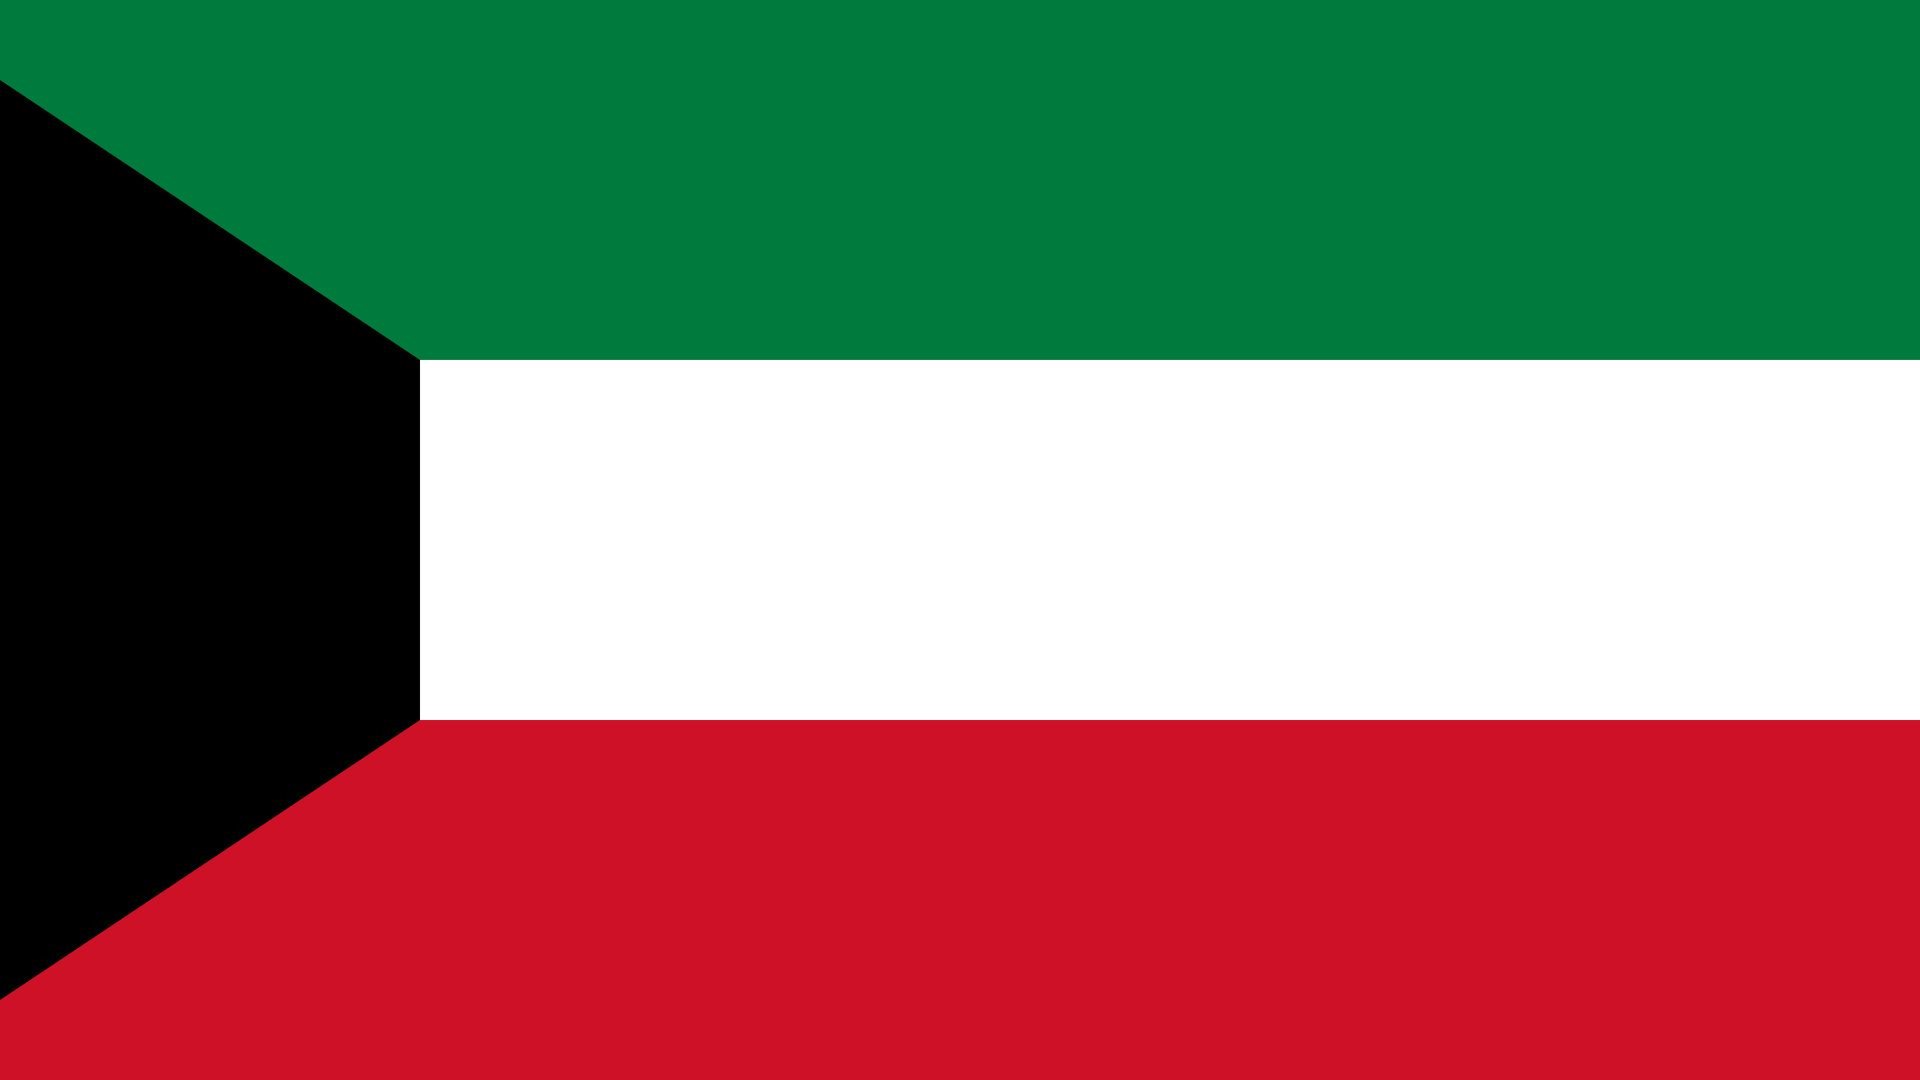 A bandeira do Kuwait é composta por quatro cores: verde, branco, vermelho e preto.